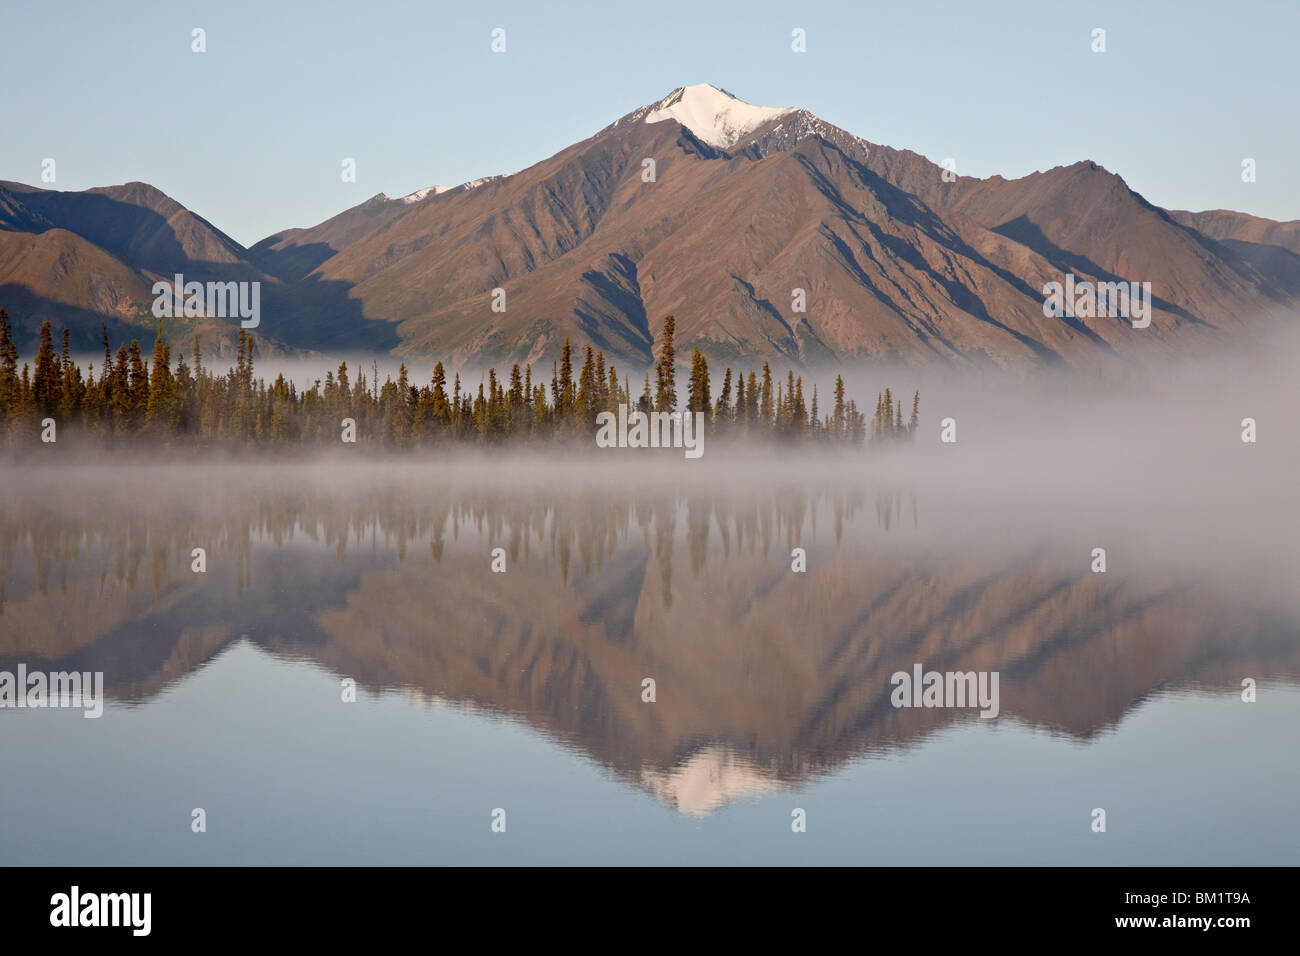 Mountain reflétée dans un lac avec le brouillard, l'autoroute Denali, Alaska, États-Unis d'Amérique, Amérique du Nord Banque D'Images